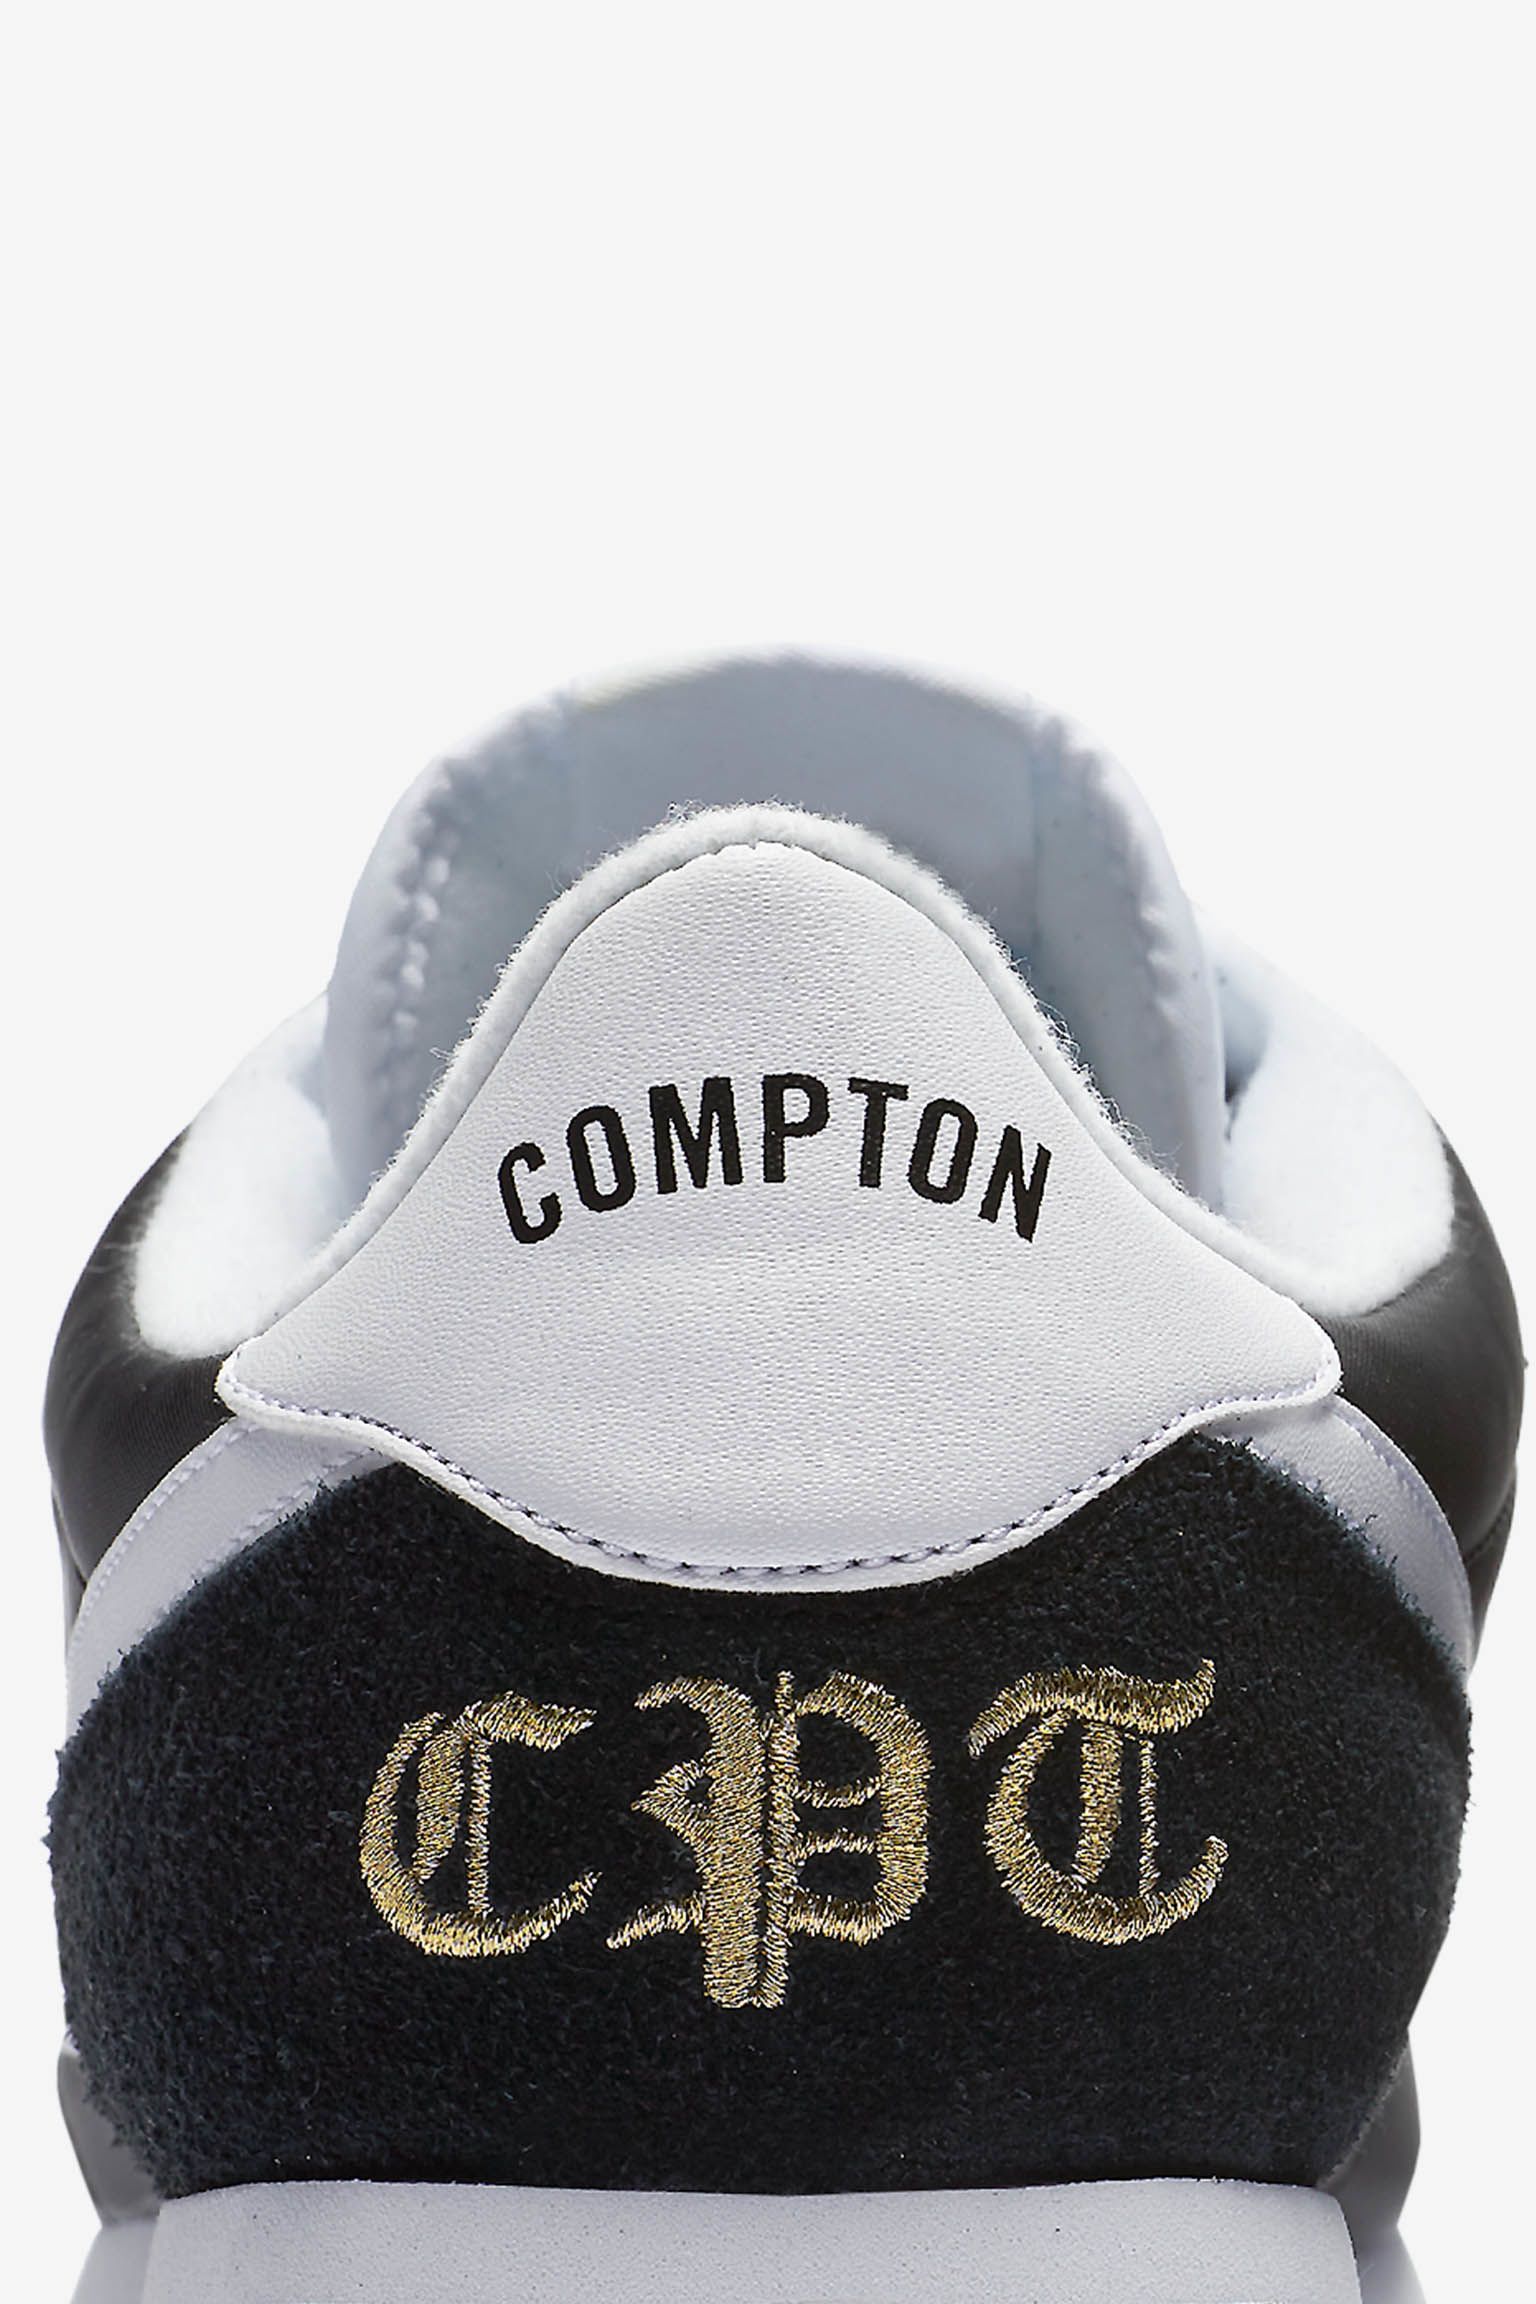 Nike Cortez Basic Nylon 'Compton 